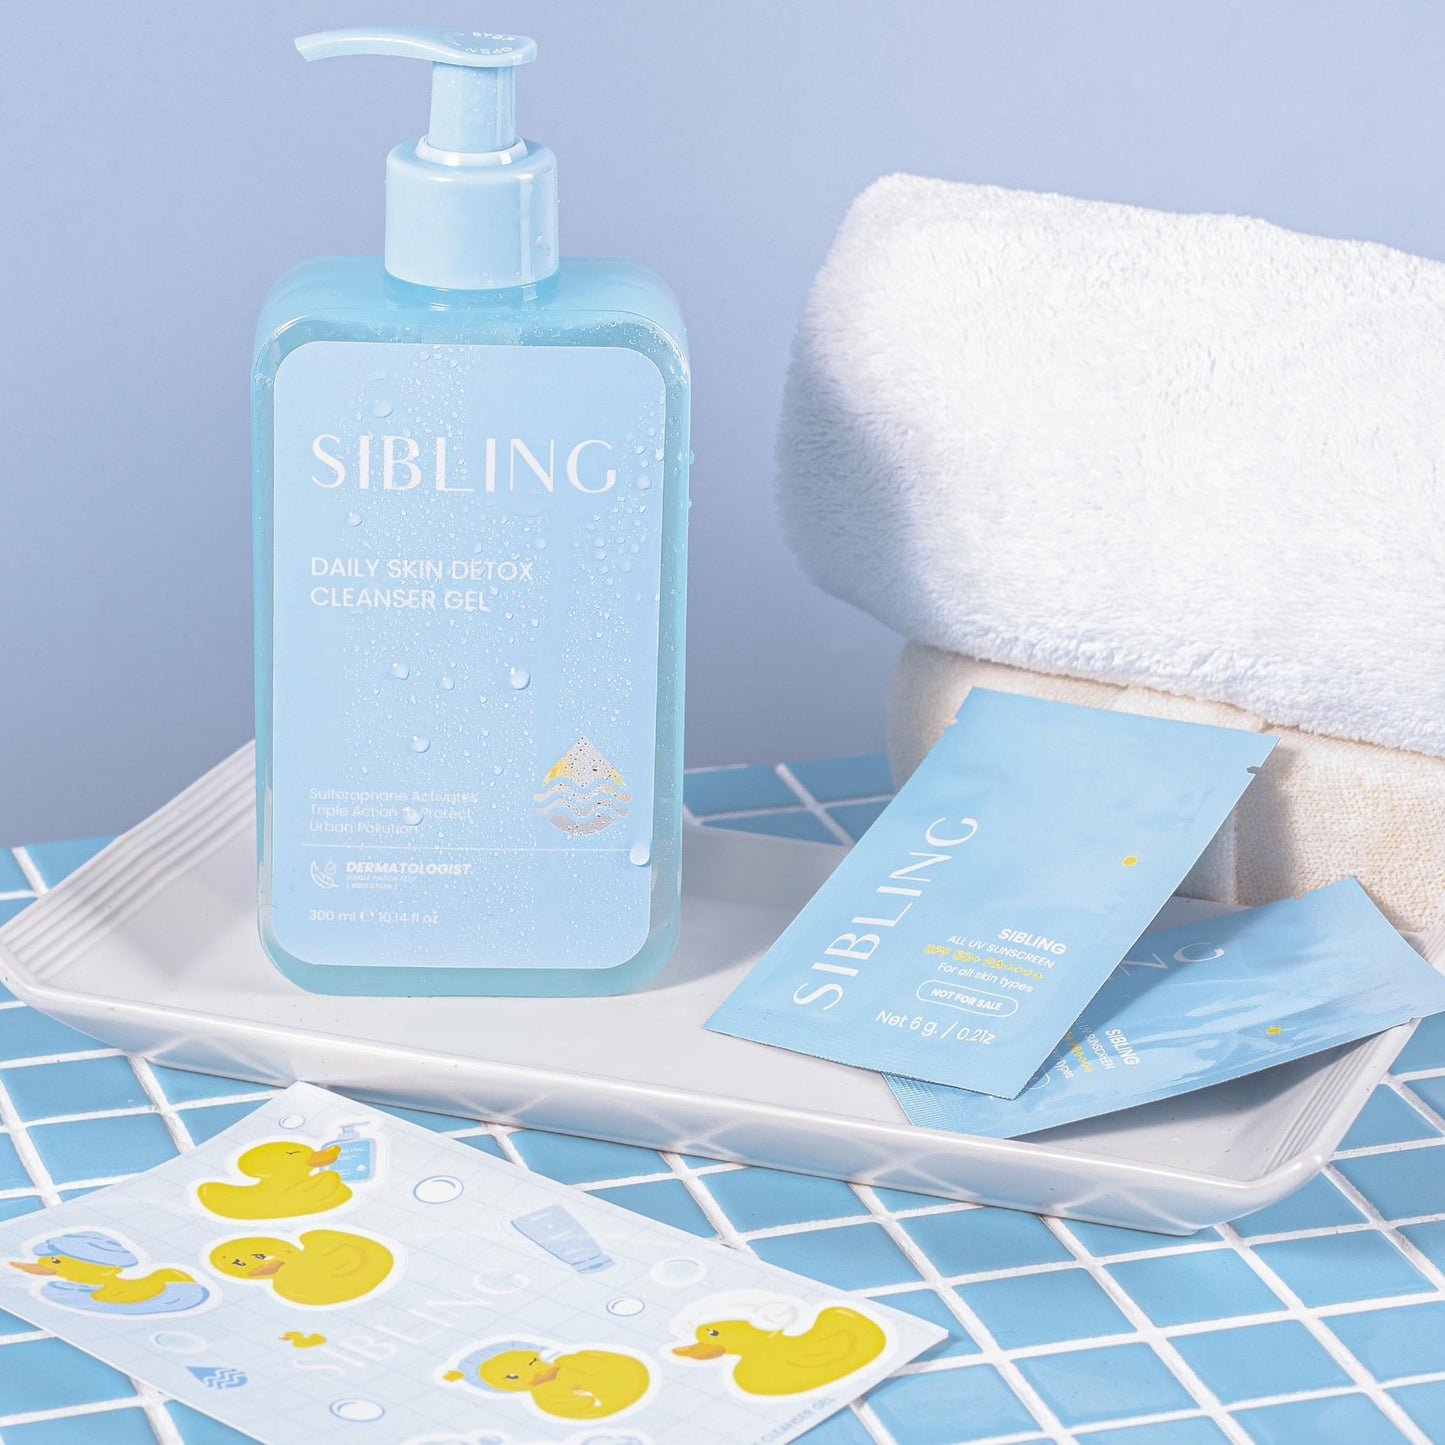 Sibling Daily Skin Detox Cleanser Gel JUMBO!! 300 ml.